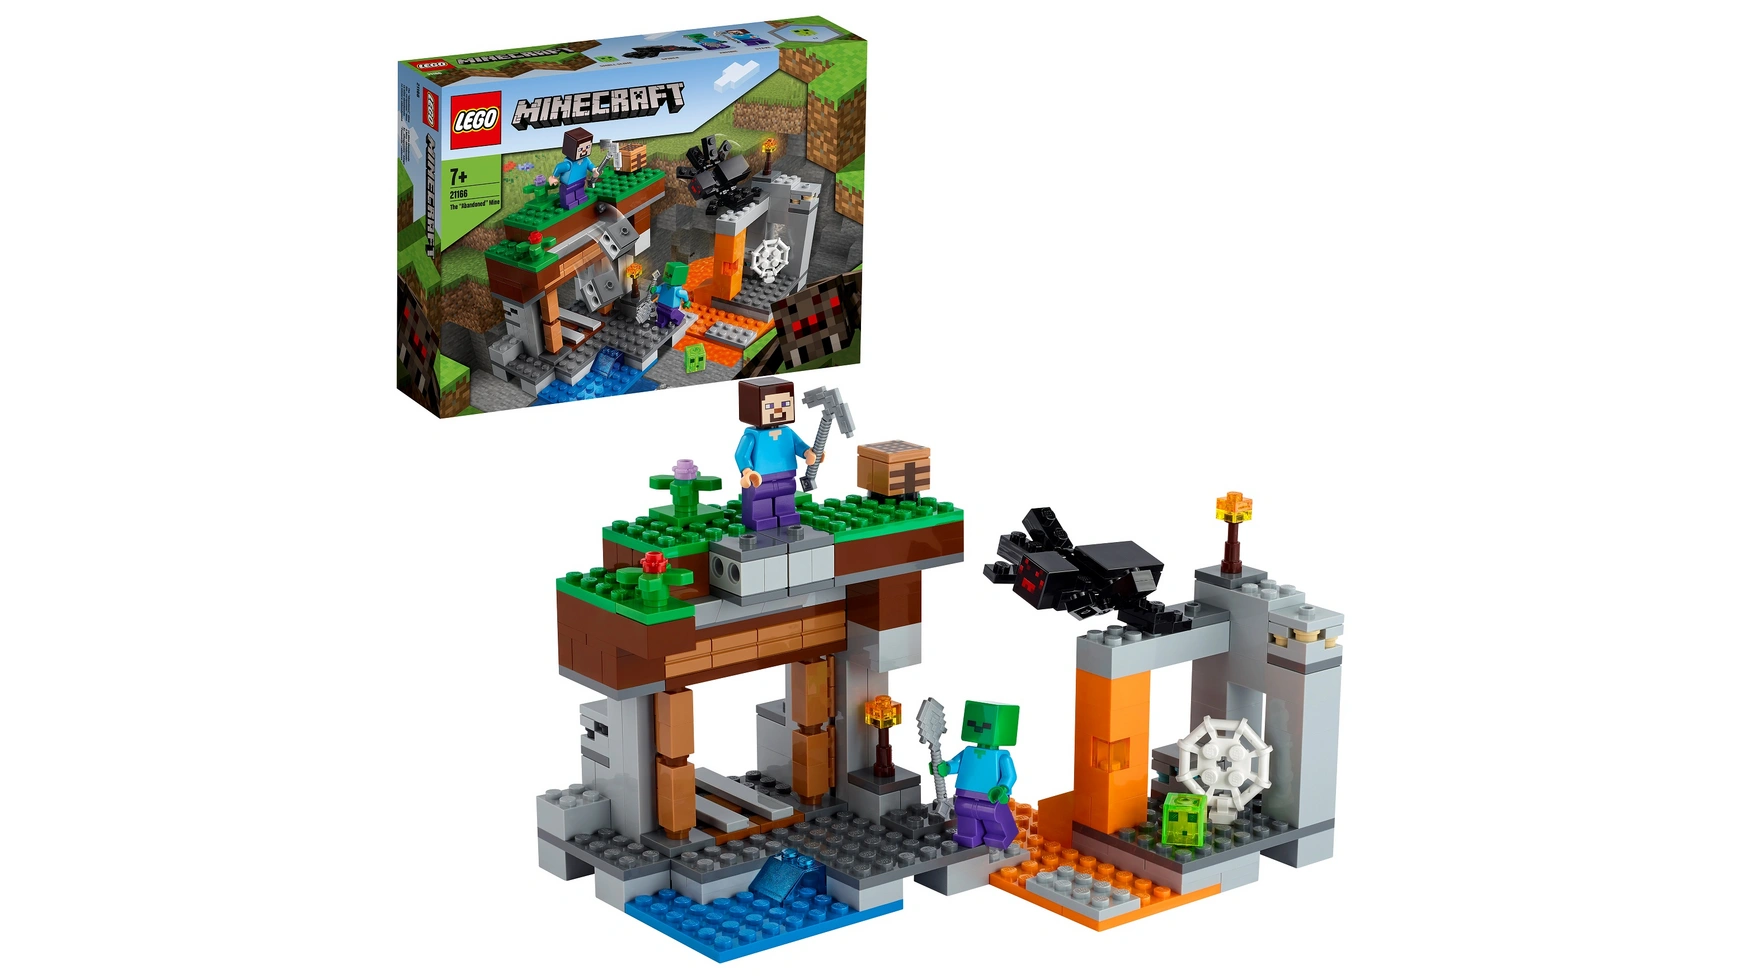 Lego Minecraft Набор Заброшенная шахта, пещера зомби с фигурками lego minecraft подземелье пещера набор игрушек с фигурками скелетов